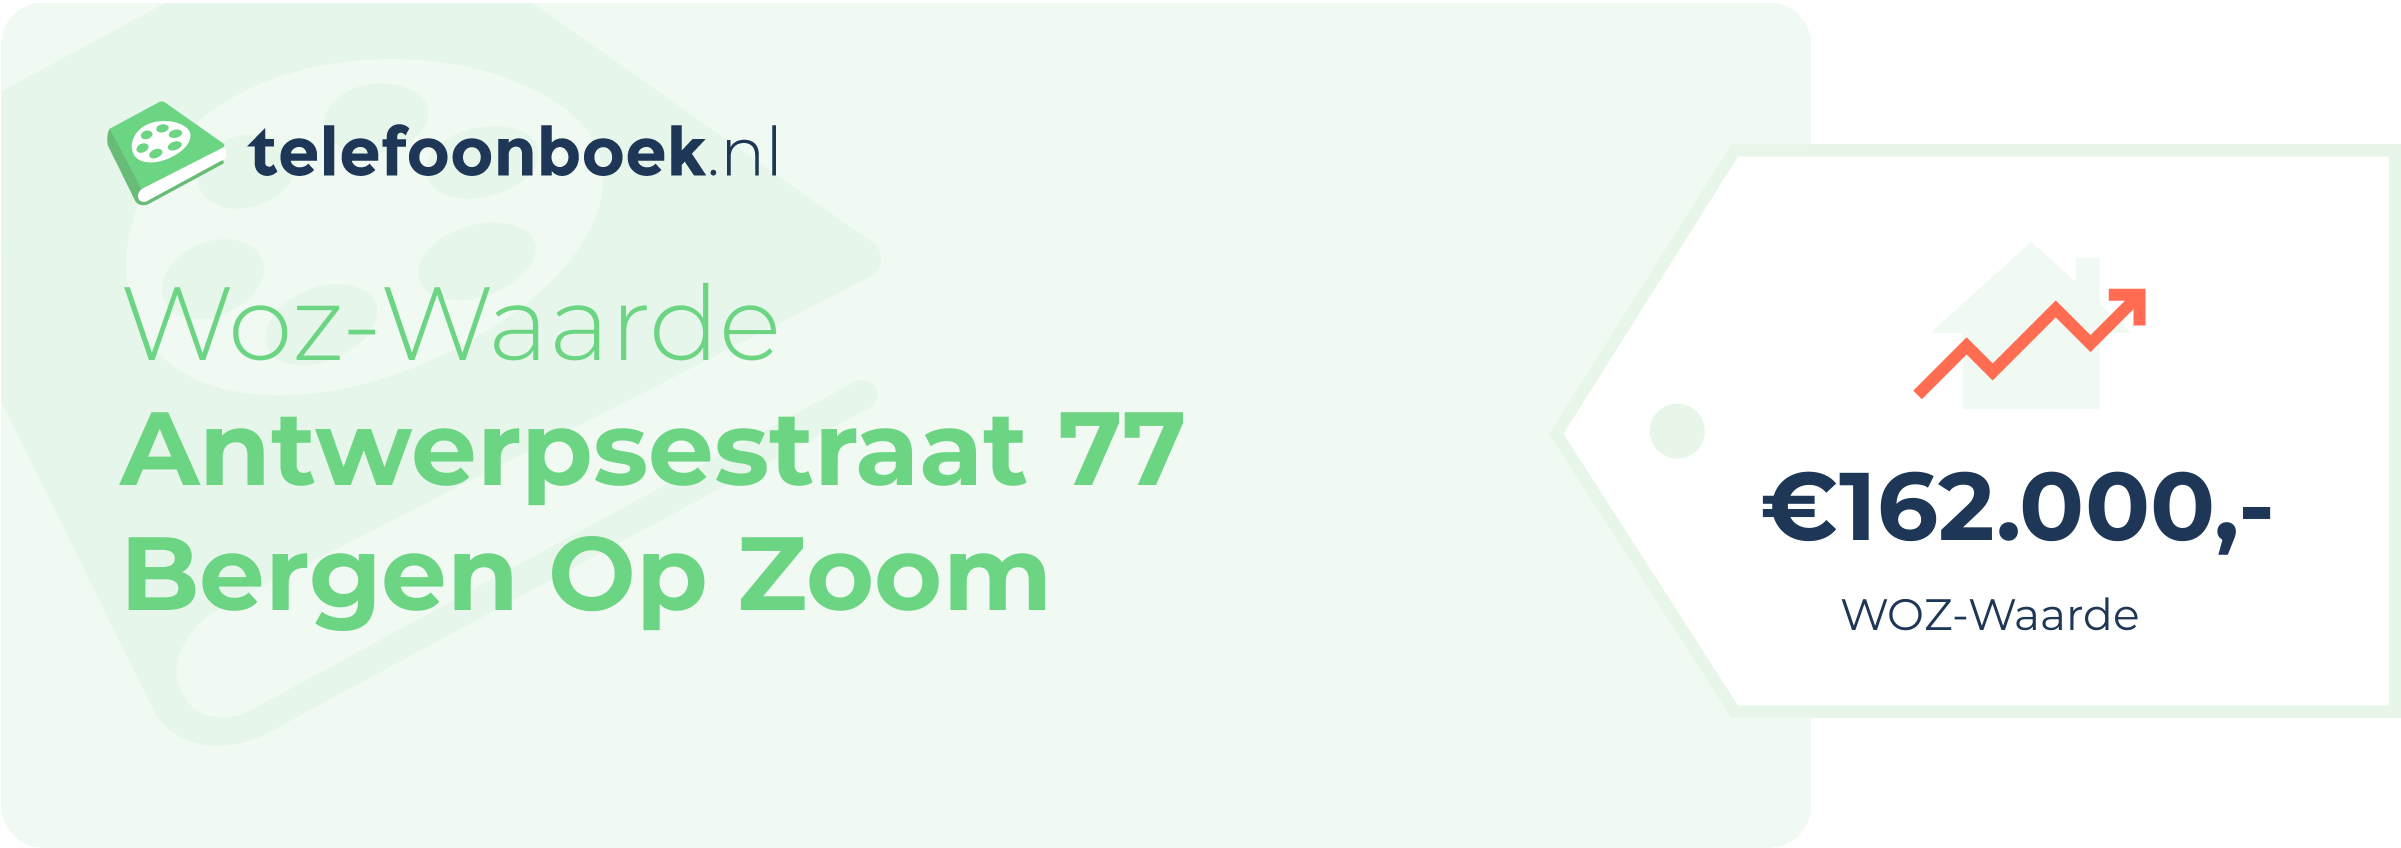 WOZ-waarde Antwerpsestraat 77 Bergen Op Zoom